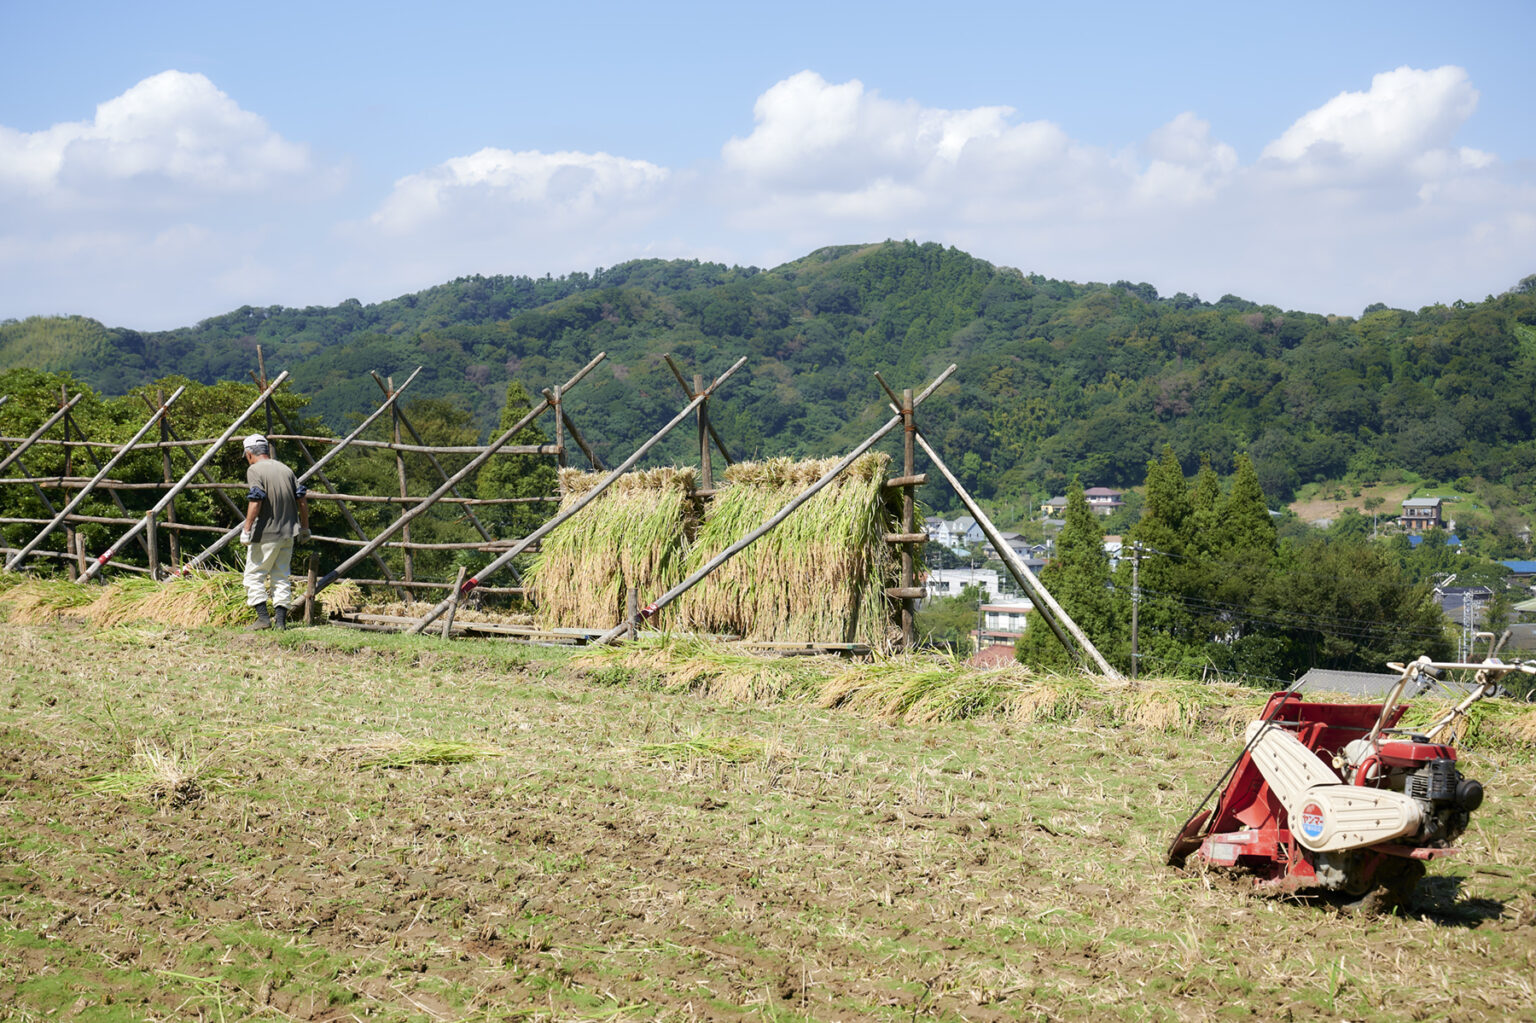 稲架掛け（はざかけ）作業。これも日本の稲作の原風景の一つ。